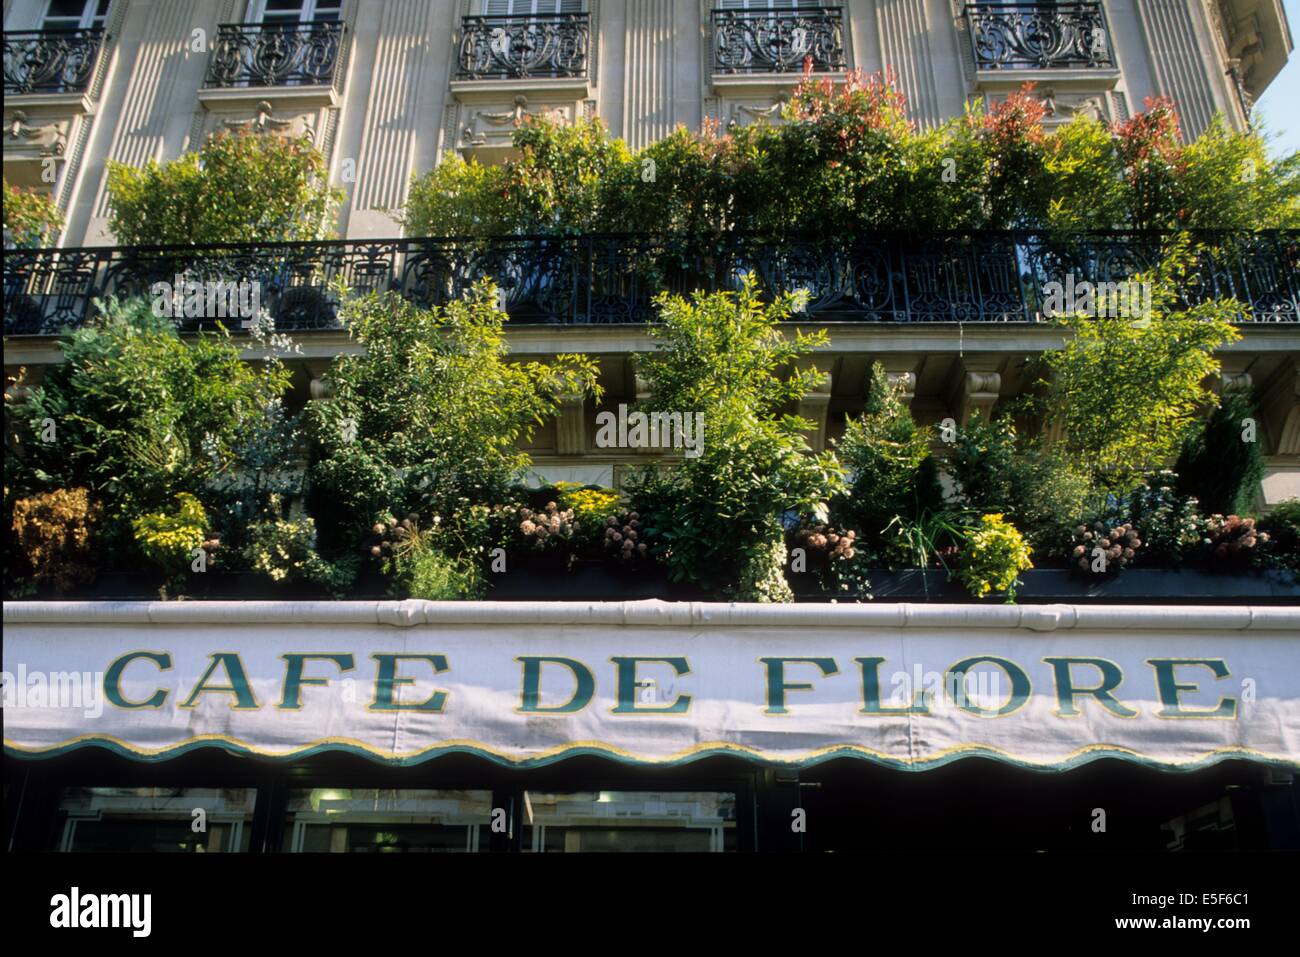 Francia, ile de france, paris 6e, saint germain des pres, cafe de flore, boulevard saint germain. Data : 2011-2012 Foto Stock